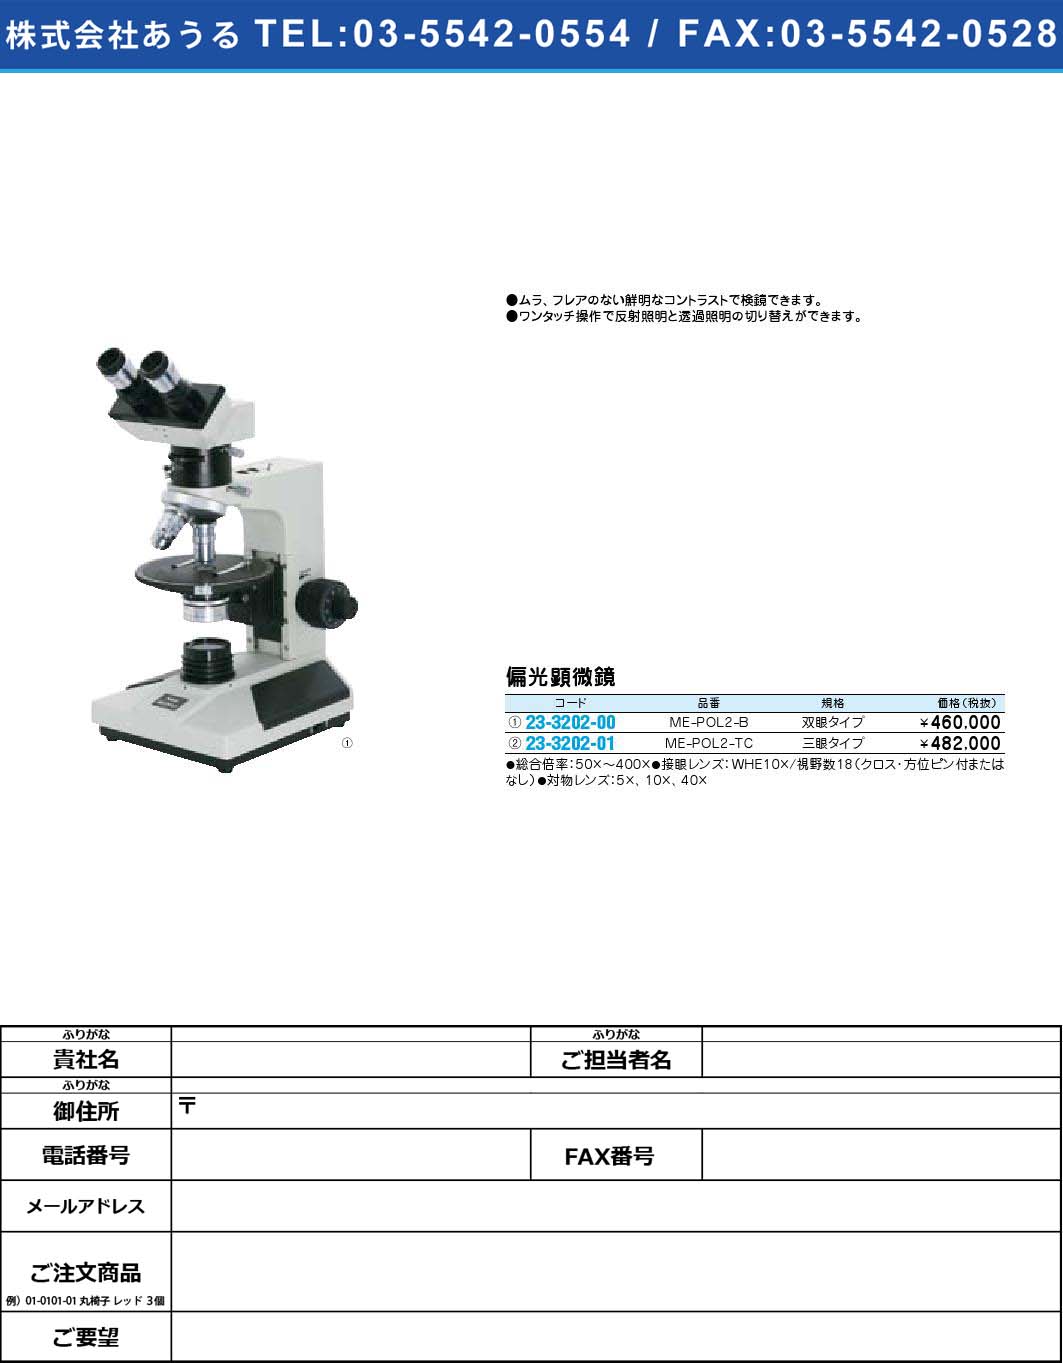 (23-3202-01)偏光顕微鏡 ME-POL2-TC(23-3202-01)【1個単位】【2009年カタログ商品】